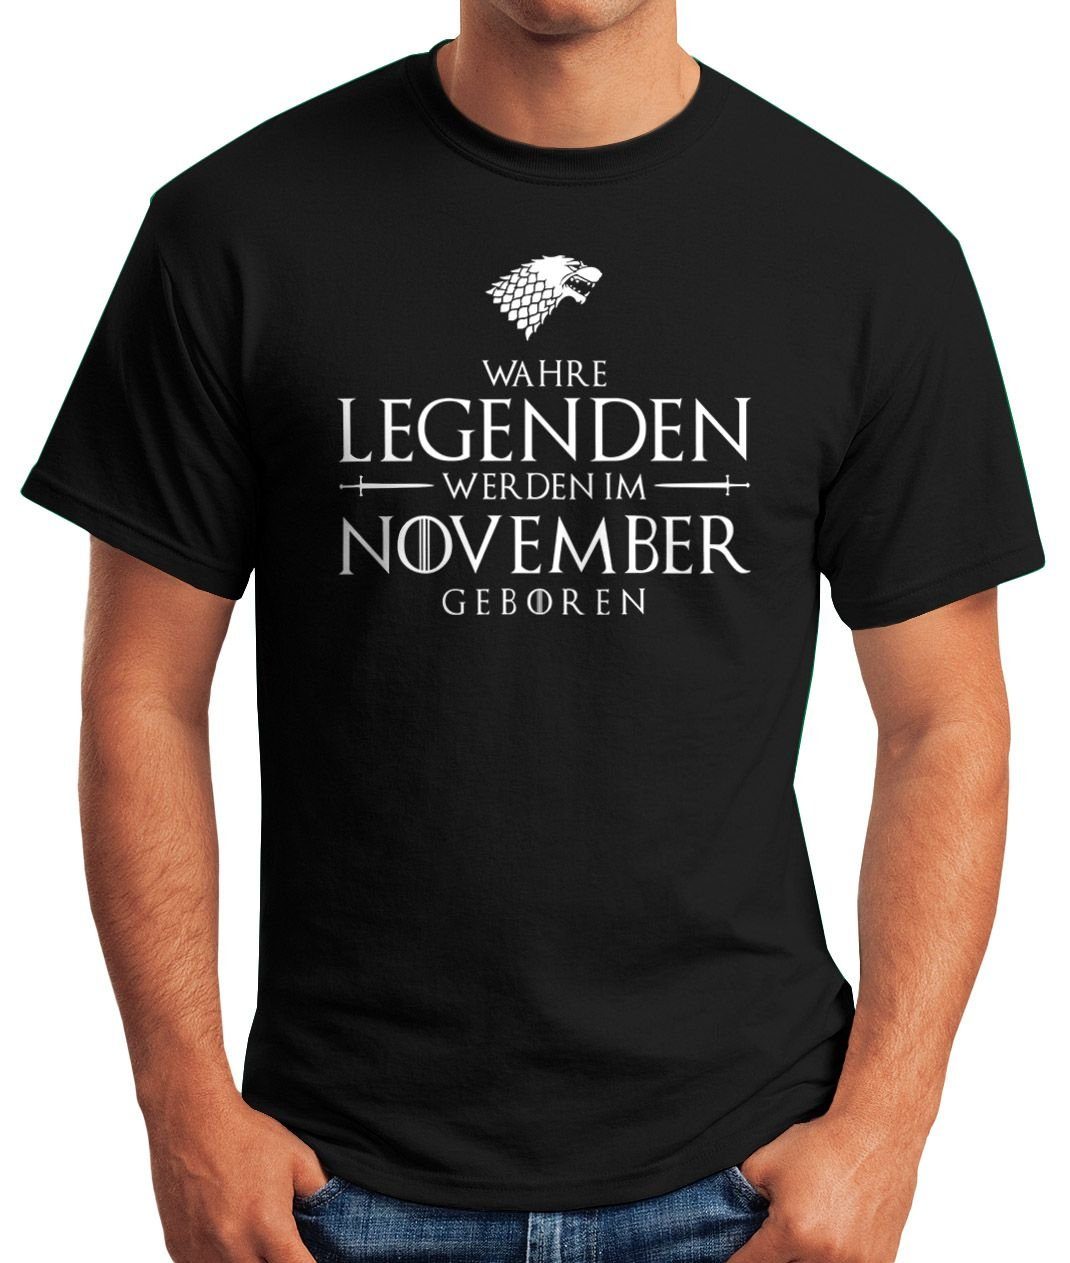 Moonworks® Legenden Fun-Shirt werden Print mit schwarz geboren Wahre T-Shirt Object] MoonWorks [object im Herren Print-Shirt November